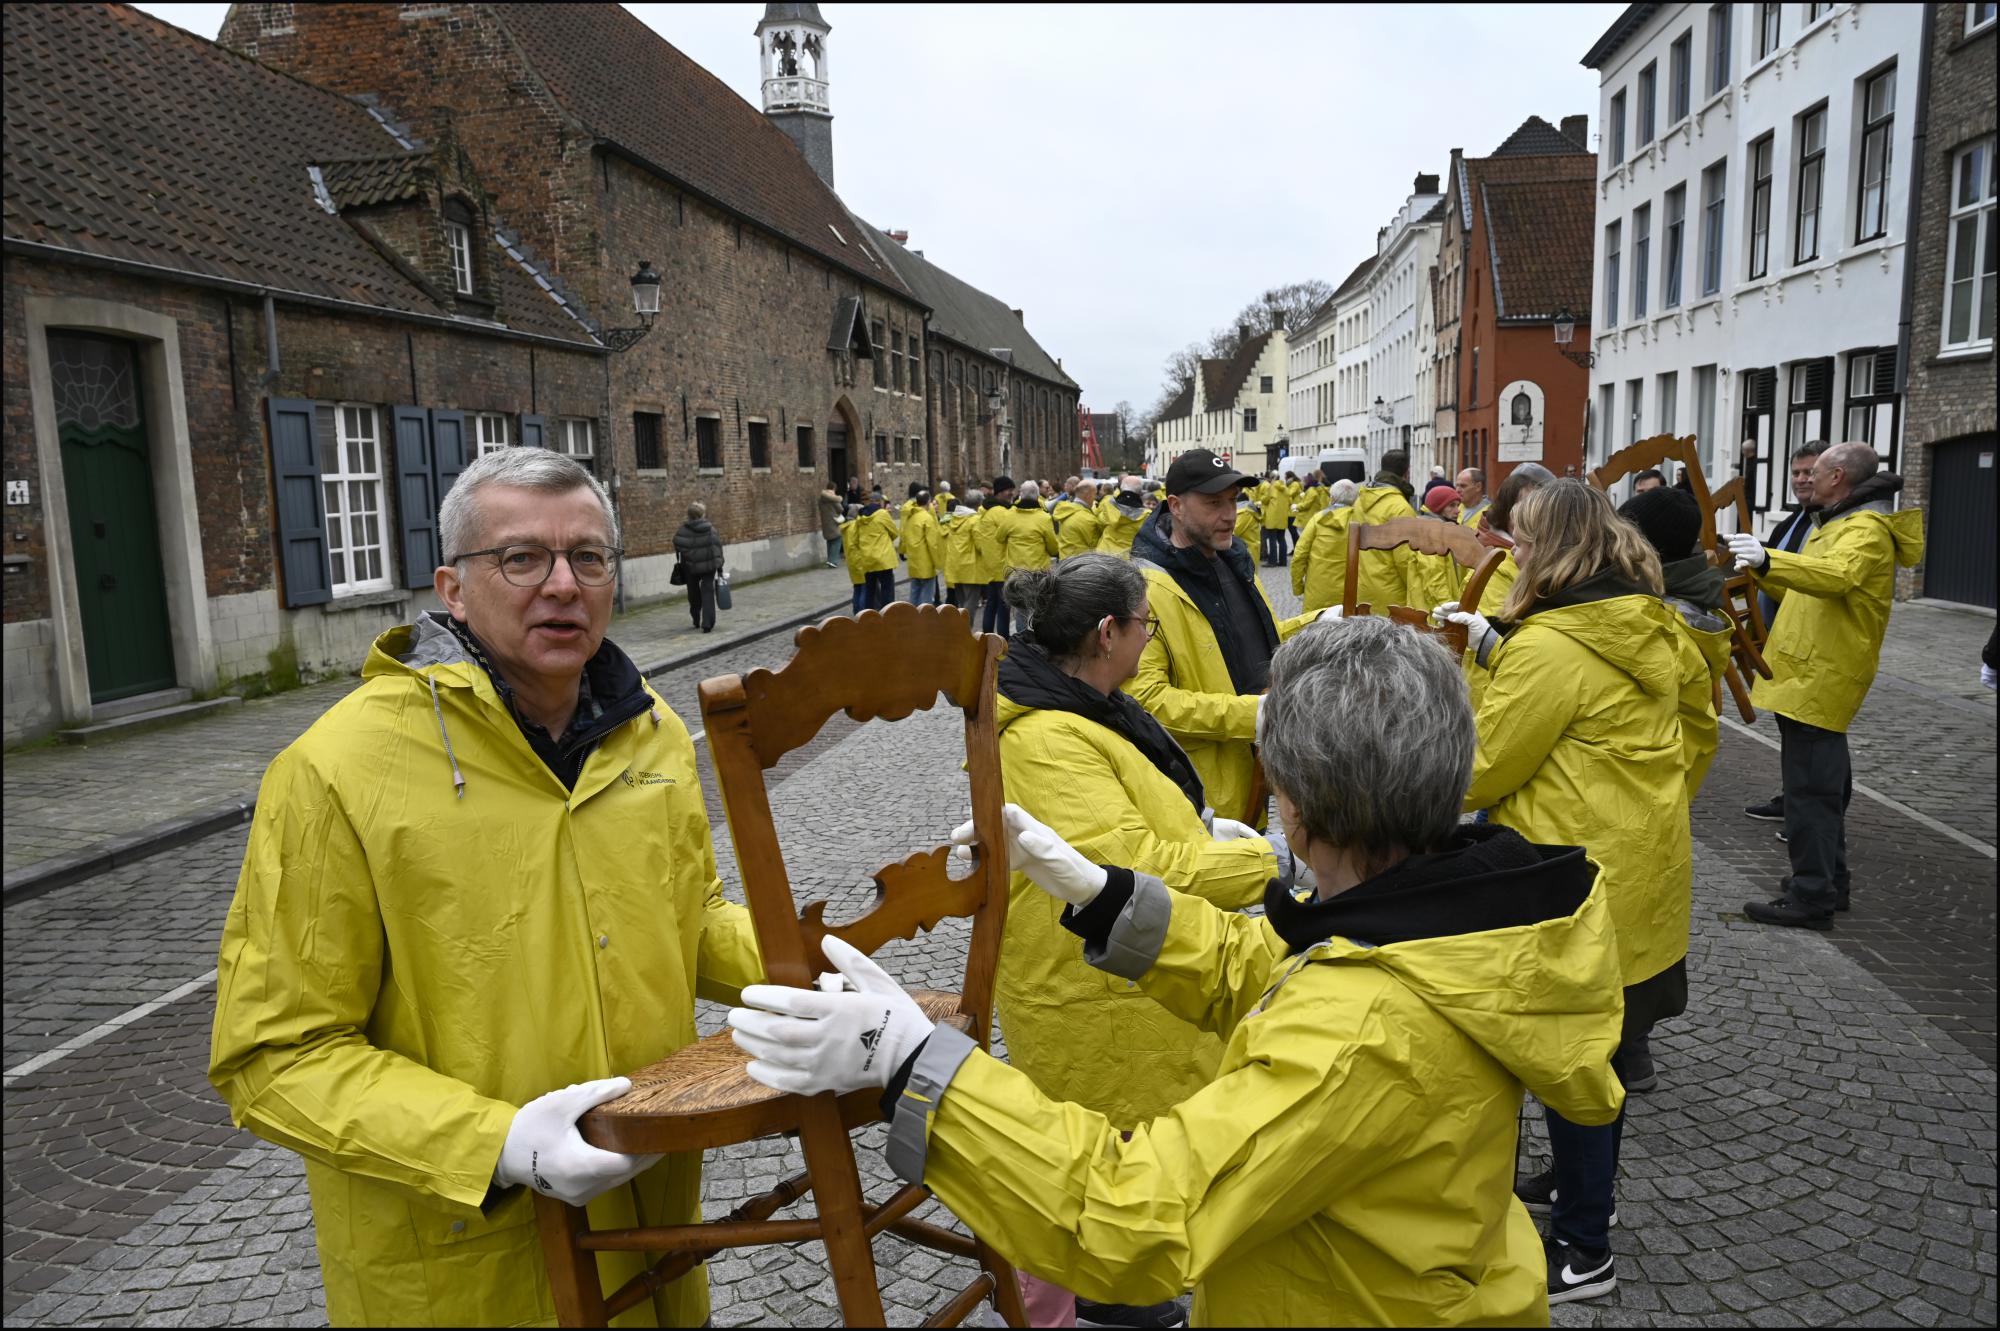 De vrijwilligers vormden een menselijke ketting tot aan de Kapucijnenkerk even verder op in de straat, waar de inboedel van de abdij een tijdelijk onderkomen krijgt. 